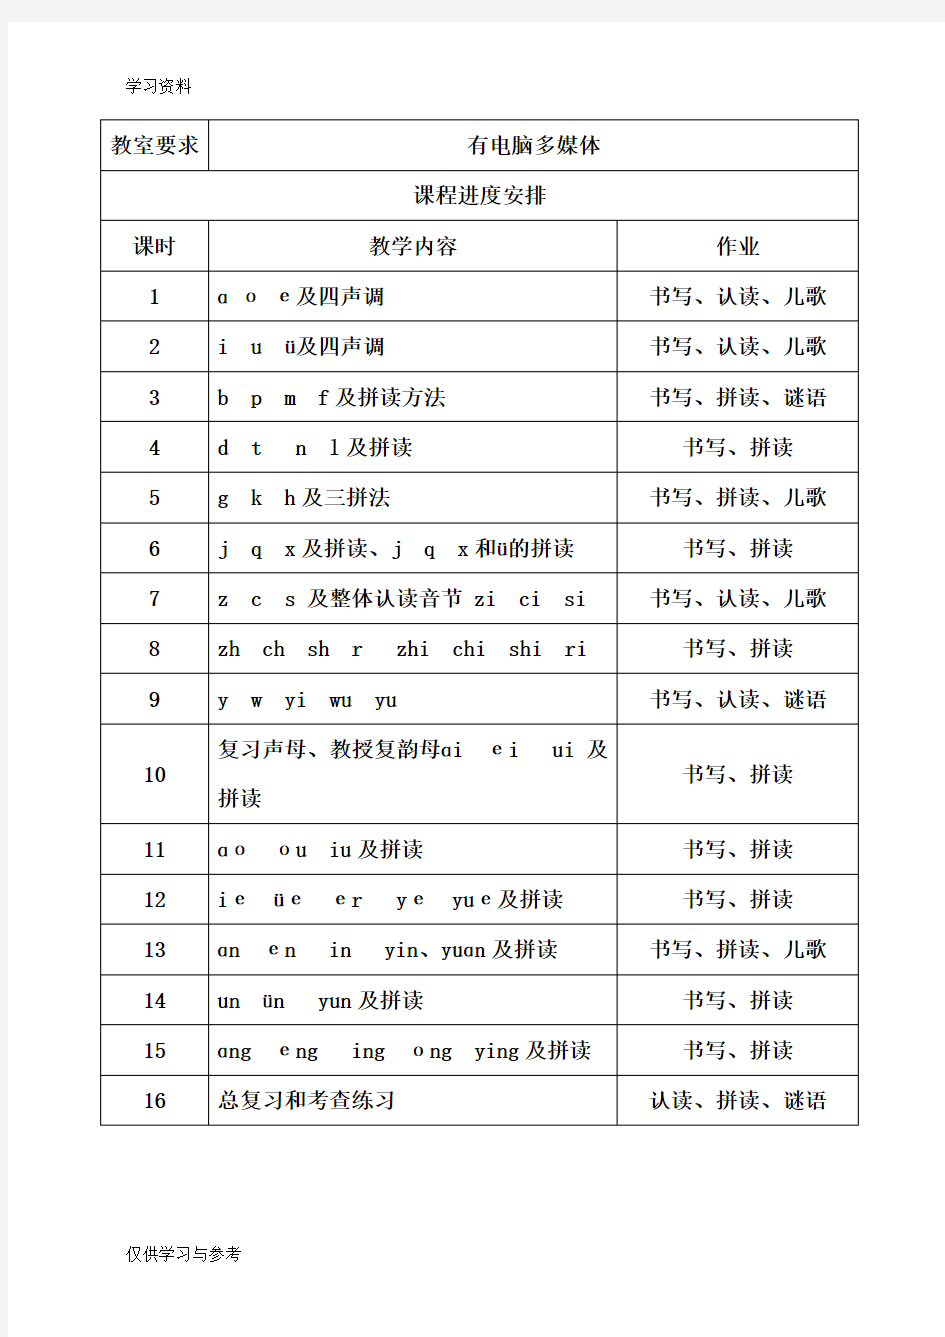 汉语拼音班课程计划表学习资料